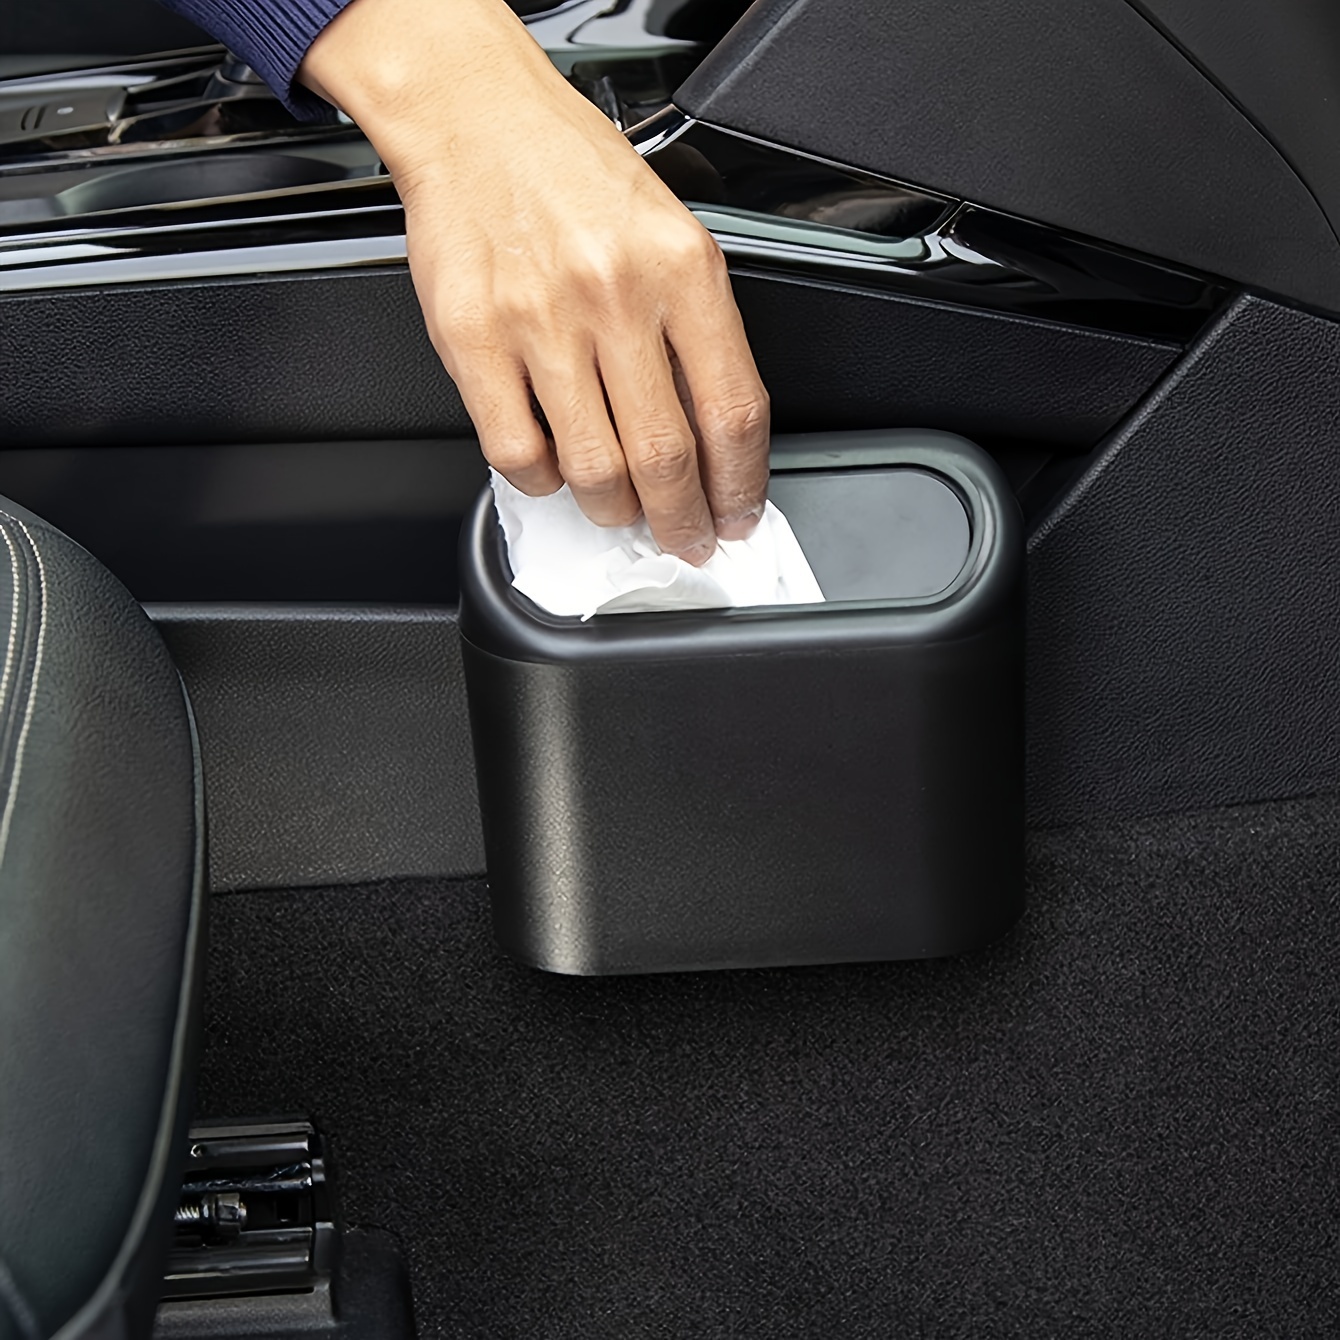 Portable Car Dustbin with Lid Car Trash Can Mini Garbage Bin for Automotive  Car-Luxury Car Trash Dustbin